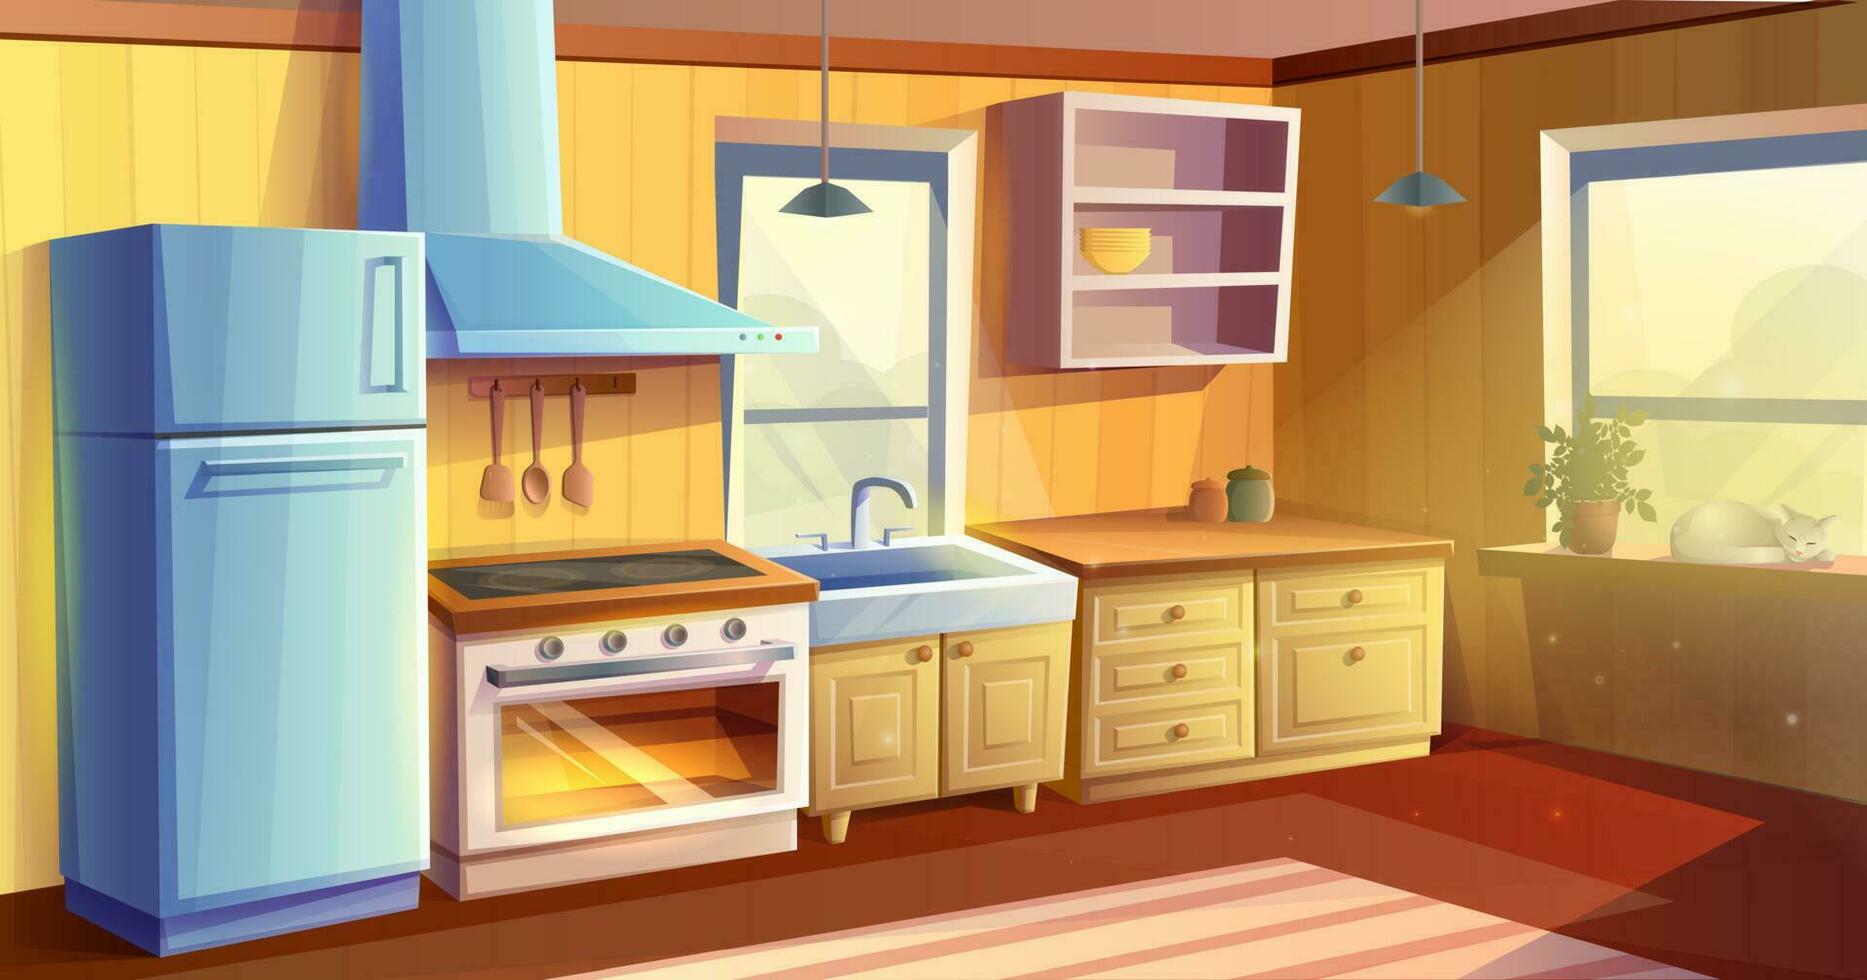 vector tekenfilm stijl illustratie van keuken kamer. dining kamer. koelkast, oven met een fornuis en kookplaat, wasbak, kabinetten en afzuigkap kap.